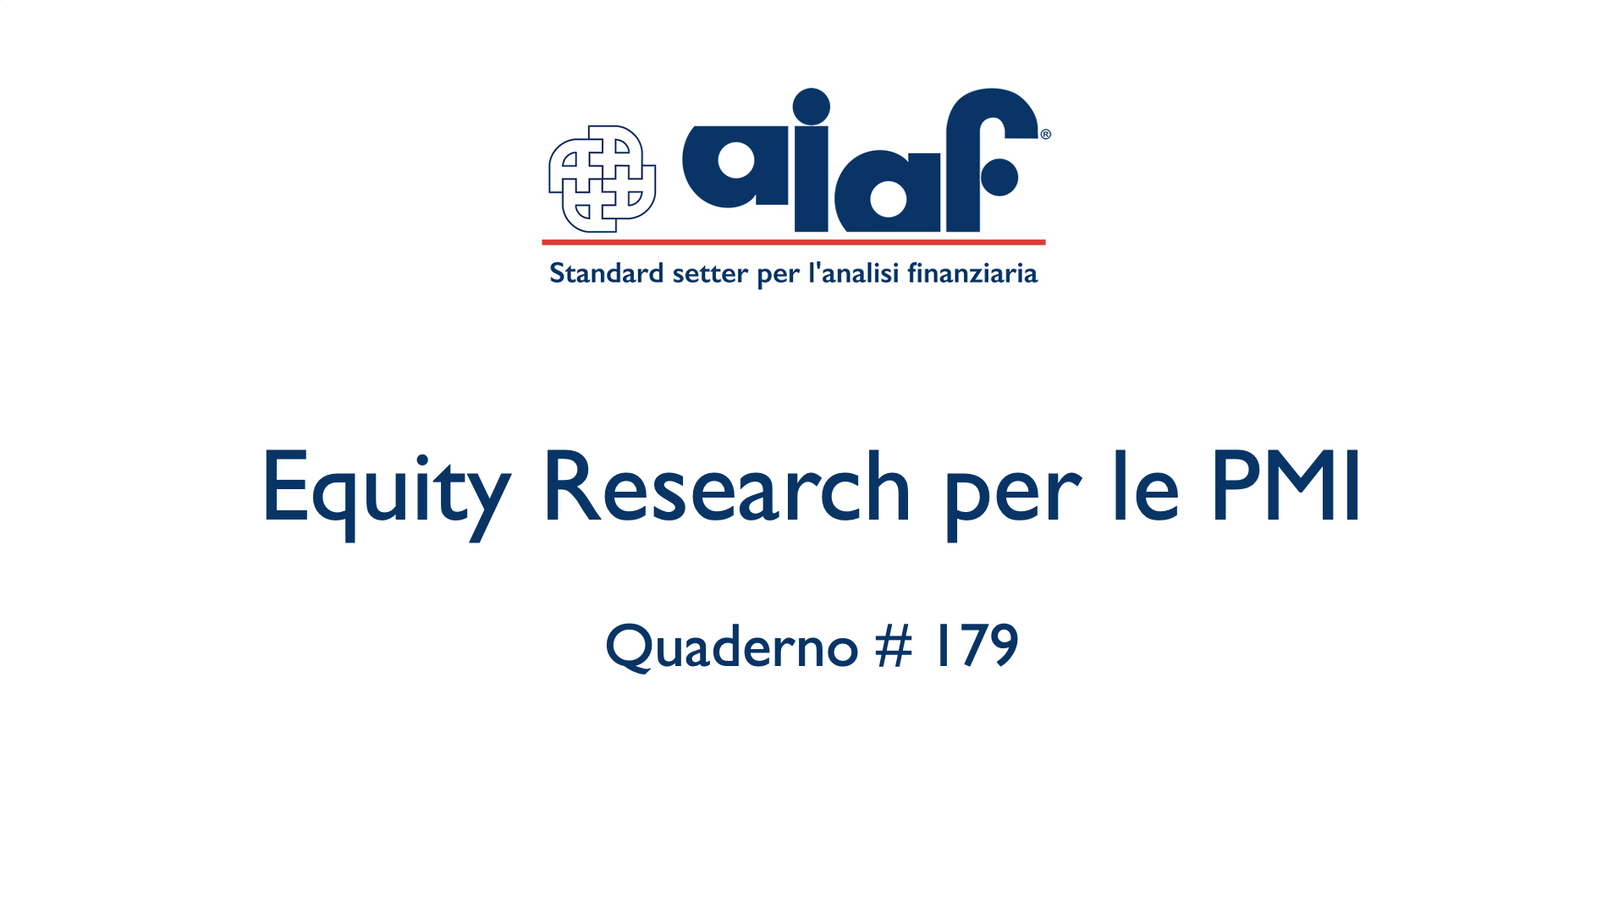 Equity Research per le PMI - Q. #179